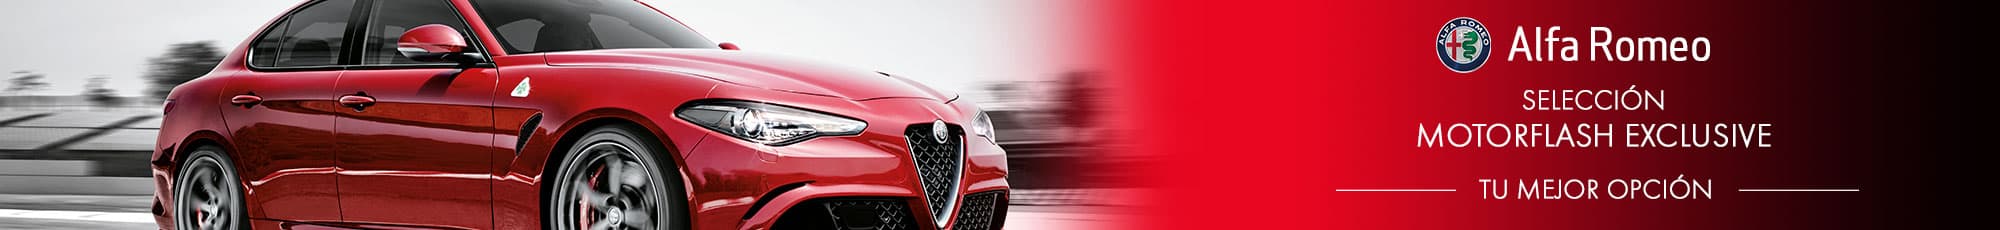 Motorflash exclusive de la marca Alfa Romeo